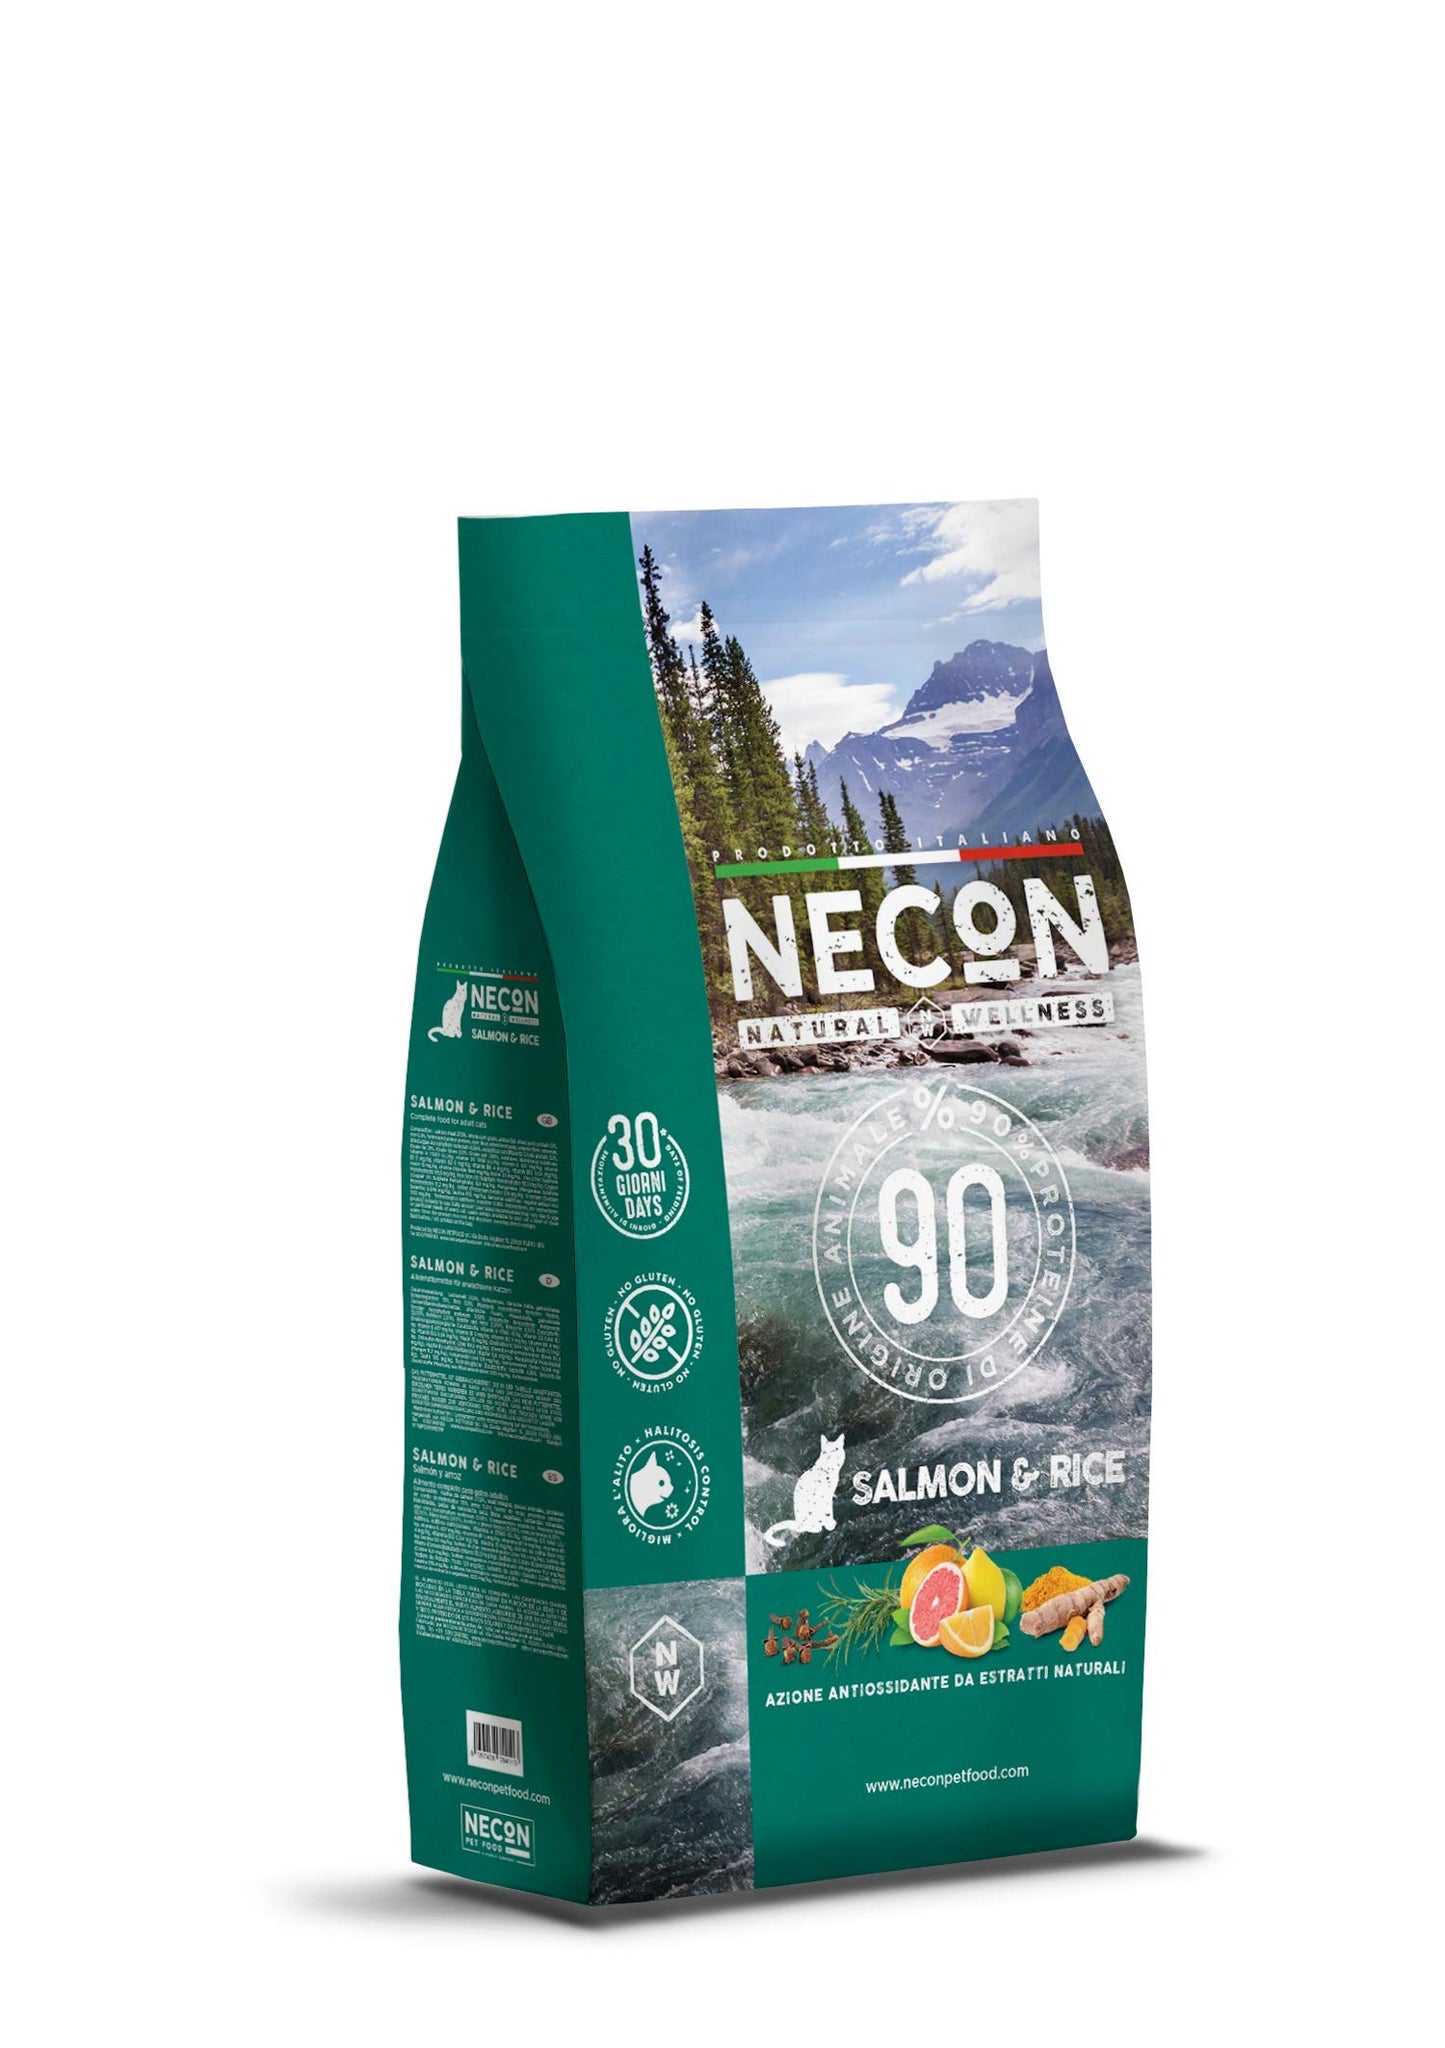 NECON NATURAL WELLNESS- Crocchette per Gatto Adulto -Gusto Salmone e riso 1,5 kg